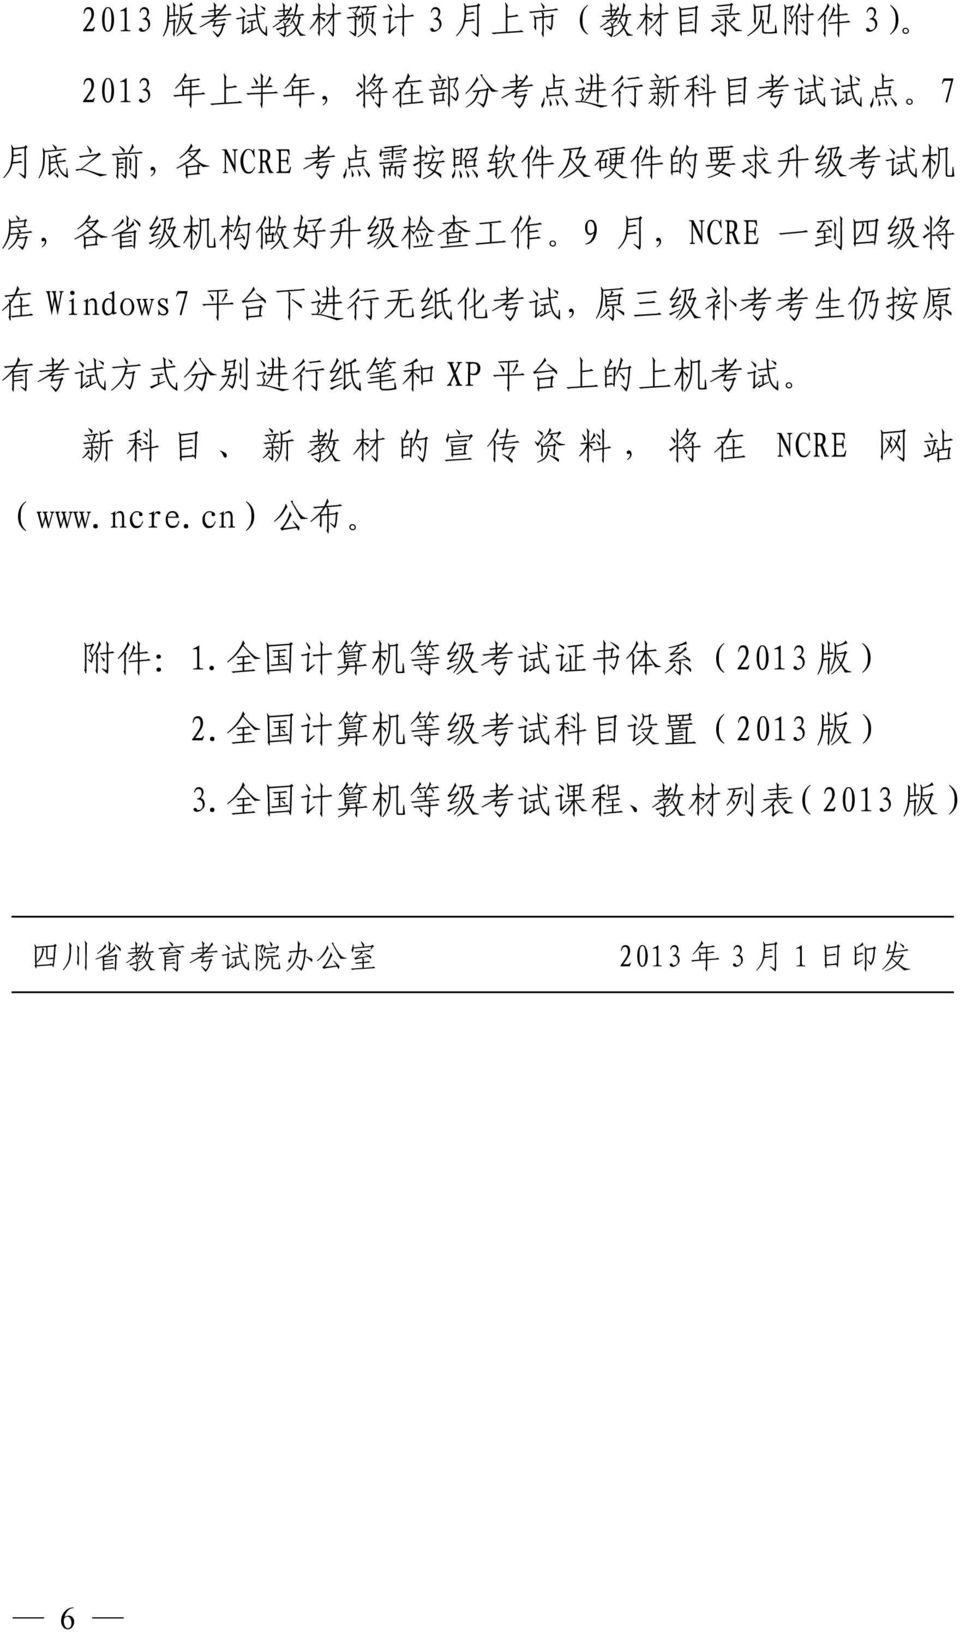 方 式 分 别 进 行 纸 笔 和 XP 平 台 上 的 上 机 考 试 新 科 目 新 教 材 的 宣 传 资 料, 将 在 NCRE 网 站 www.ncre.cn 公 布 附 件 1.